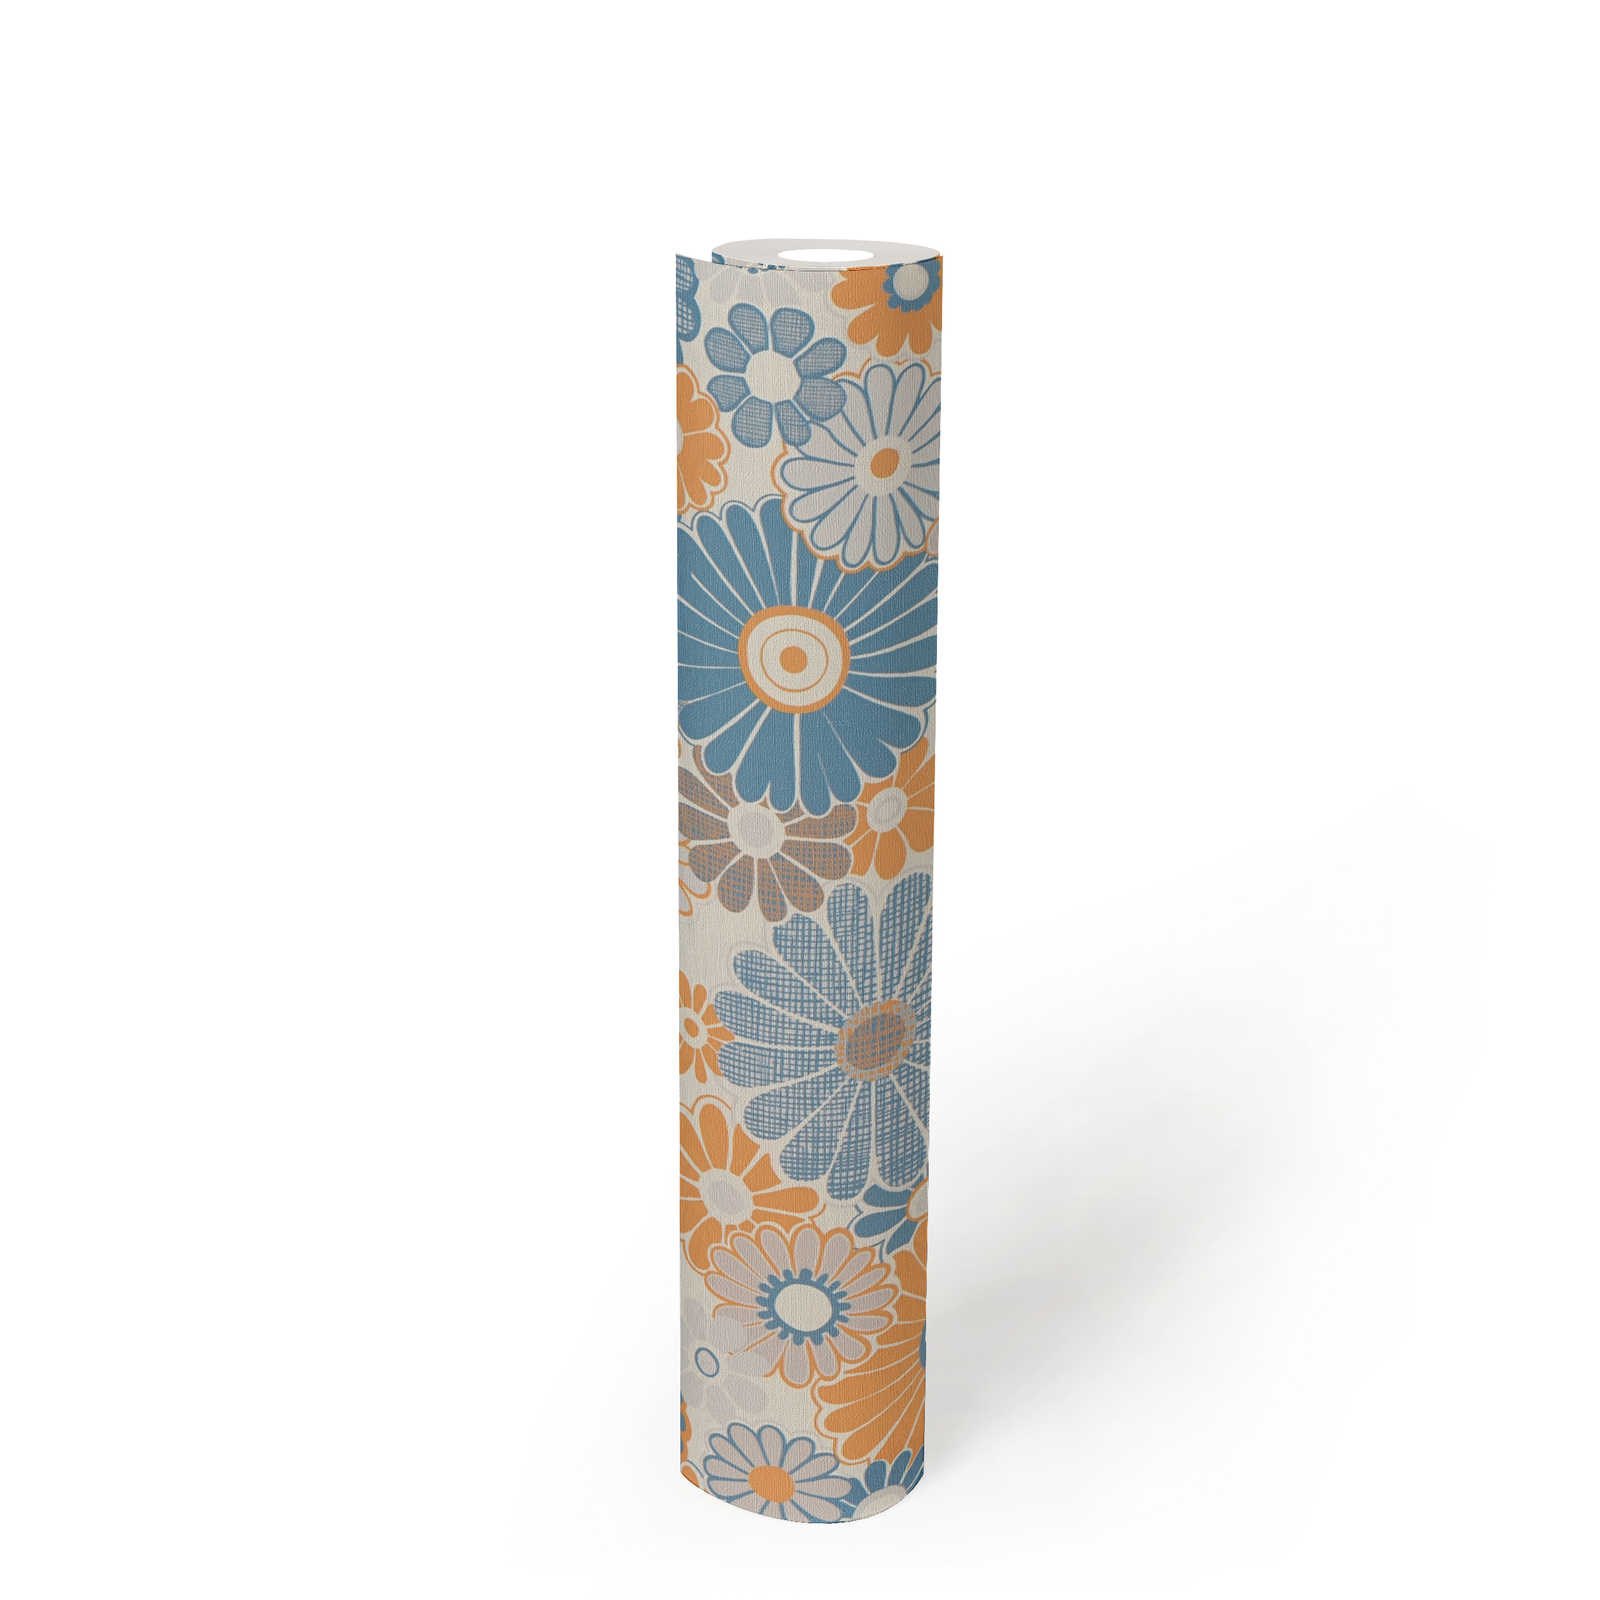             Vliesbehang met bloemenpatroon in retrostijl - blauw, oranje, grijs
        